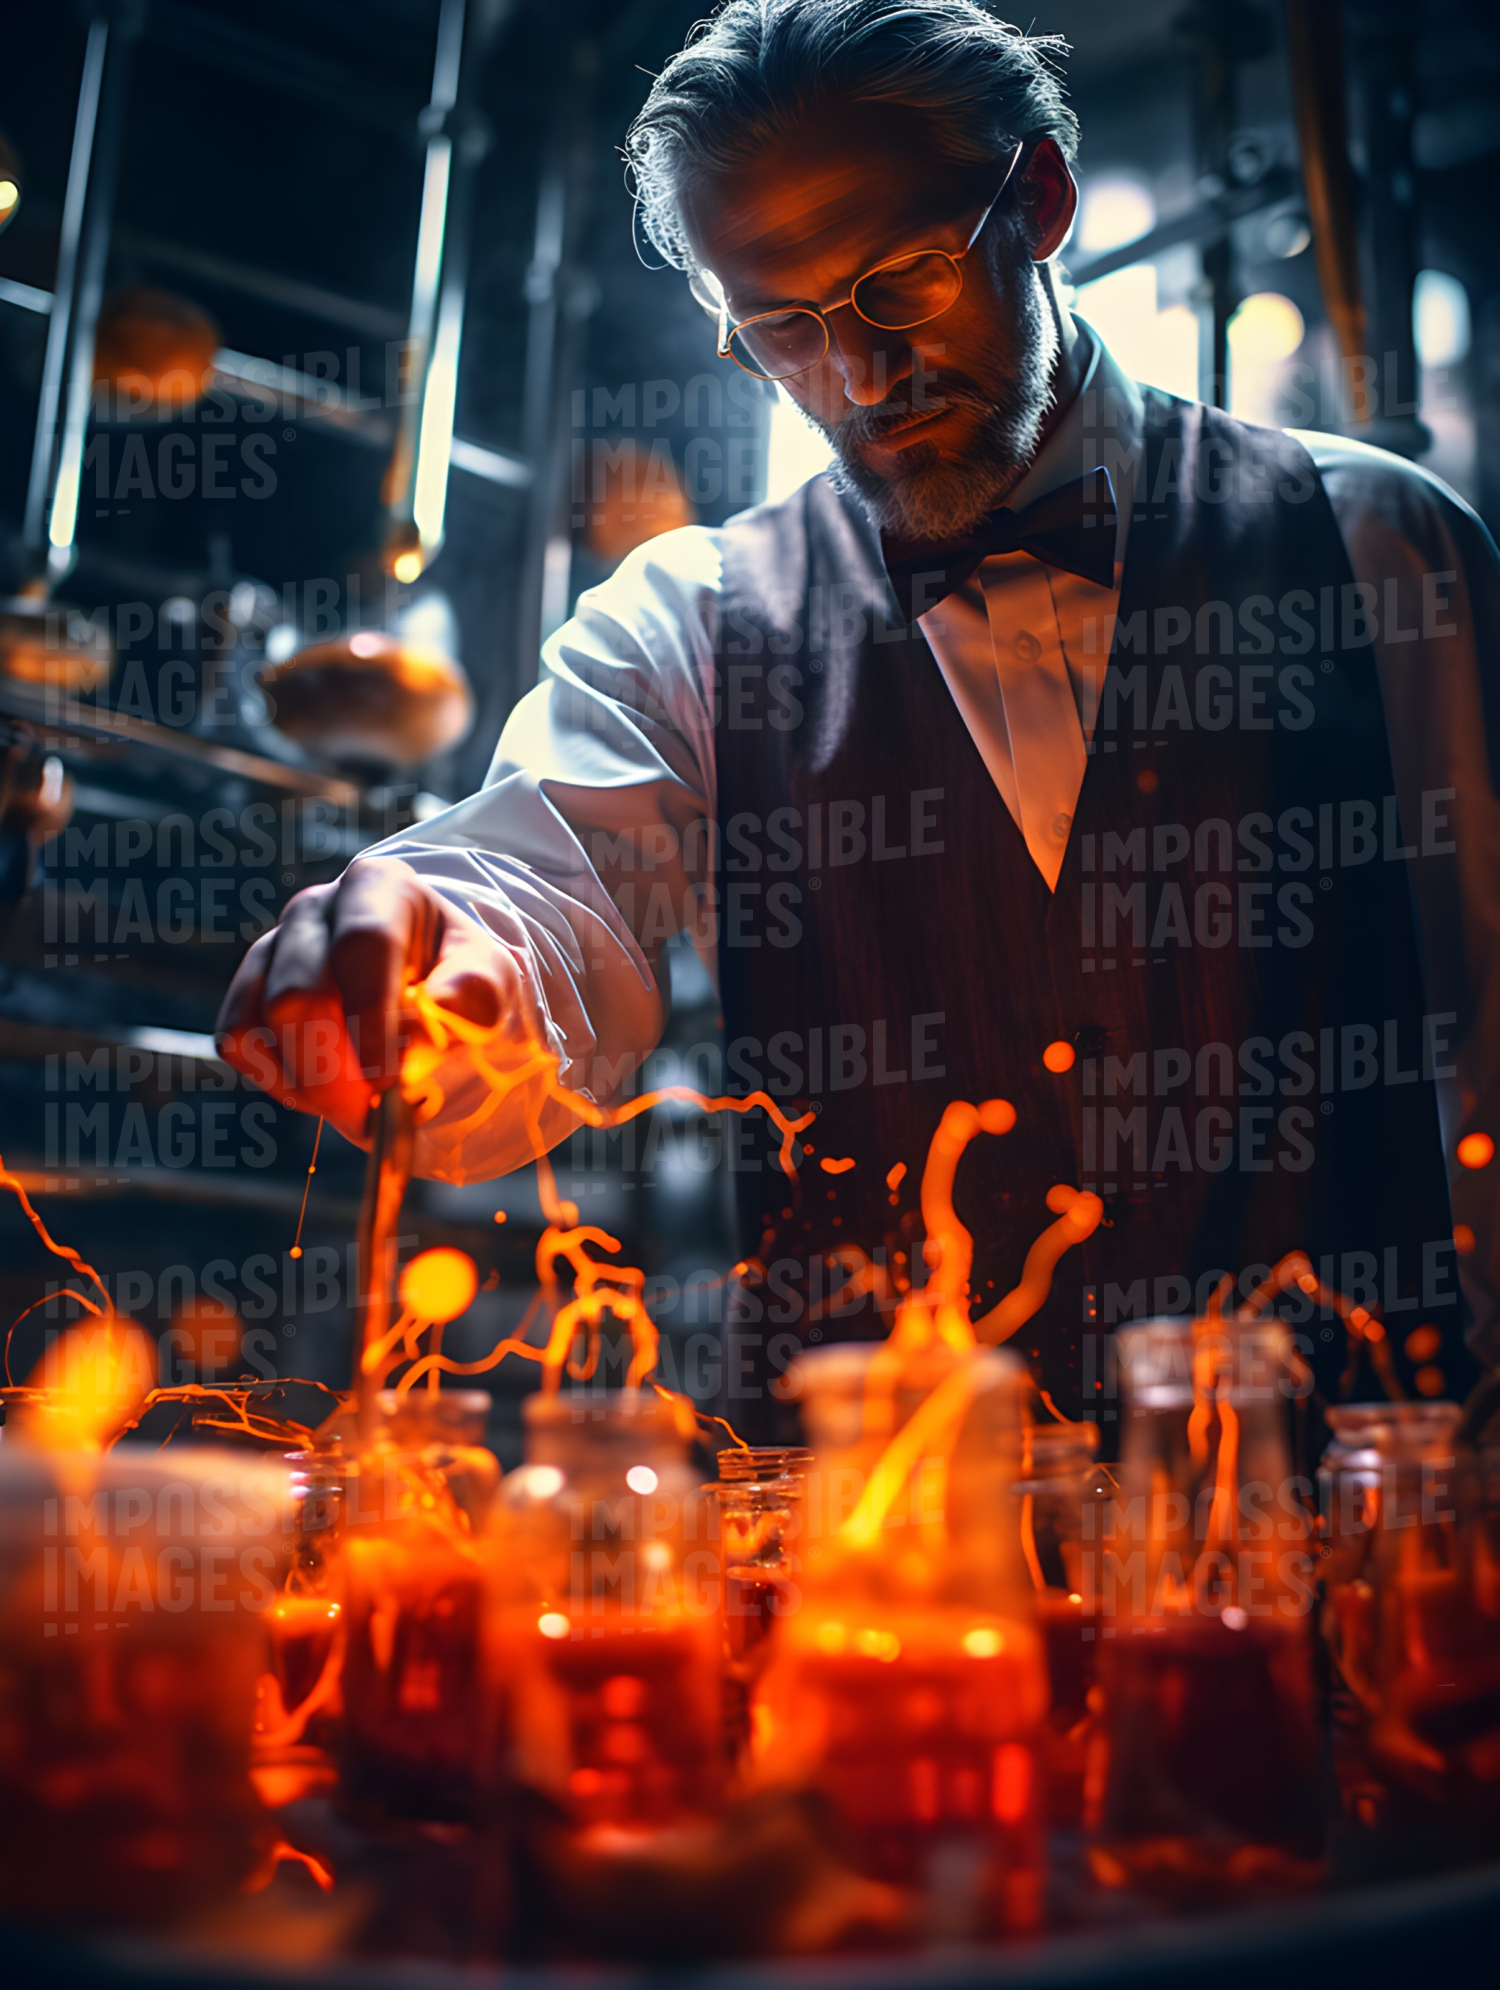 Professor creating experiment with orange liquids in beakers